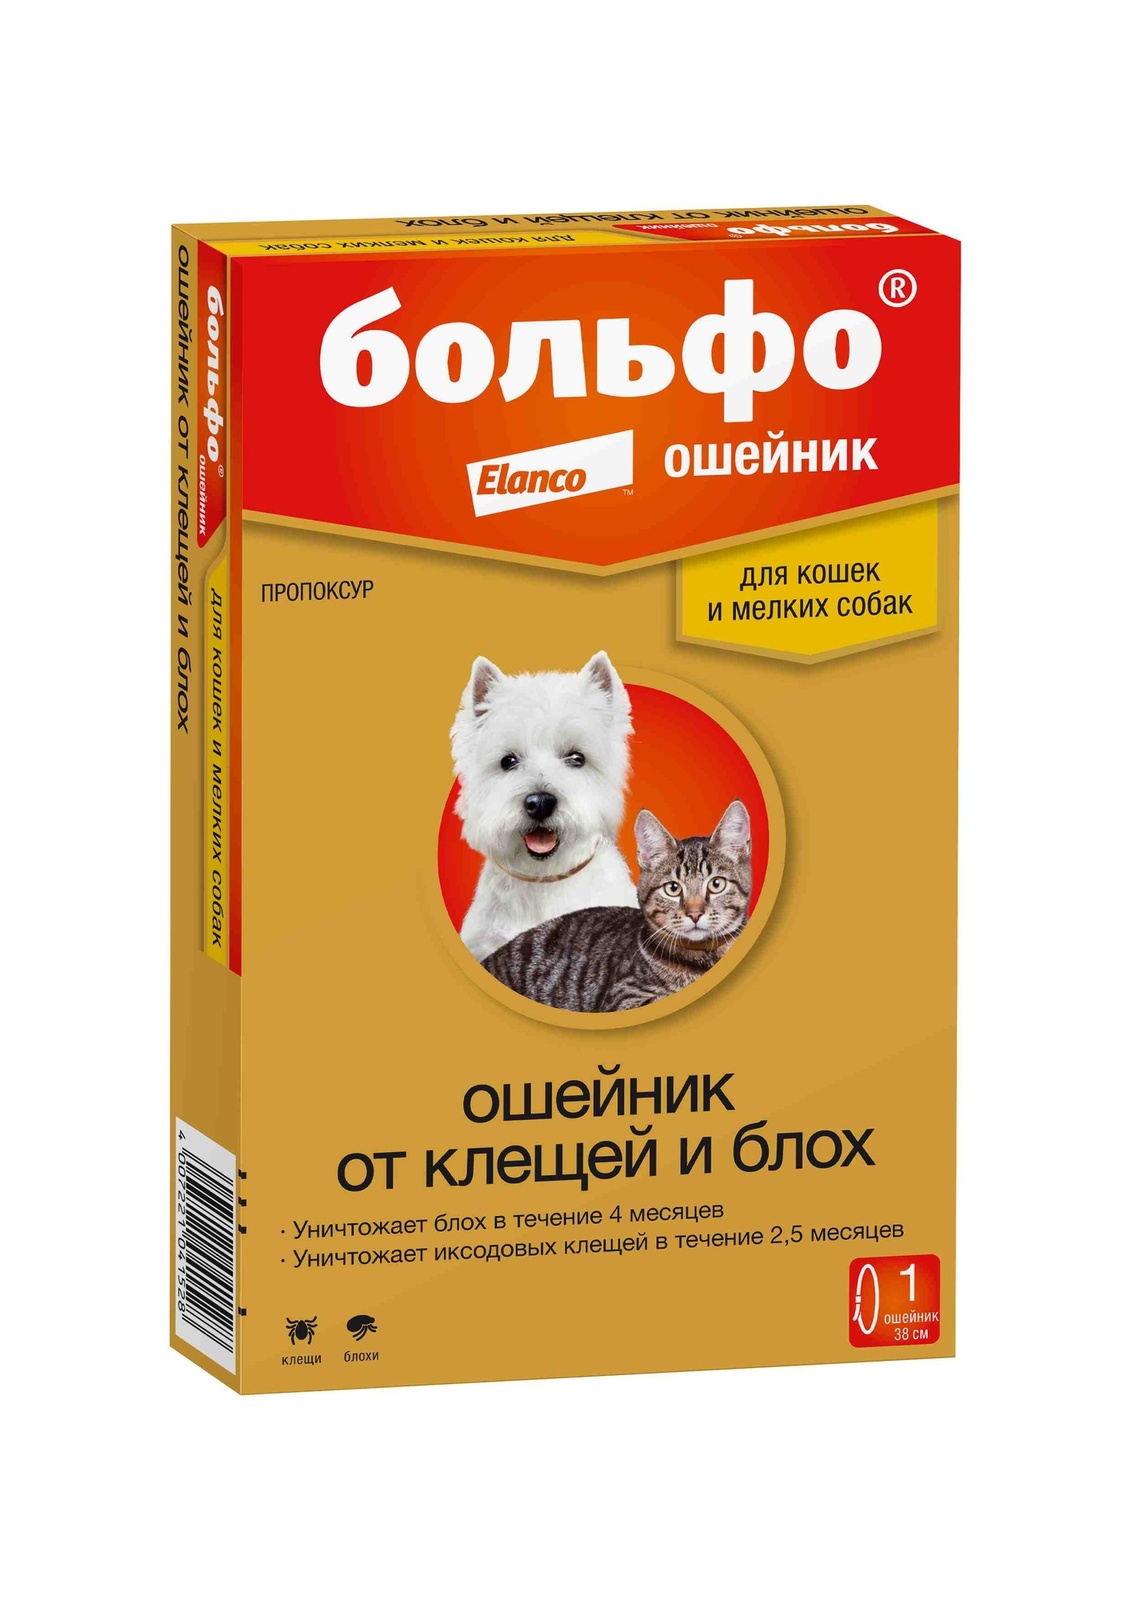 Elanco ошейник Больфо® от блох и клещей для кошек и собак мелких пород (10 г)